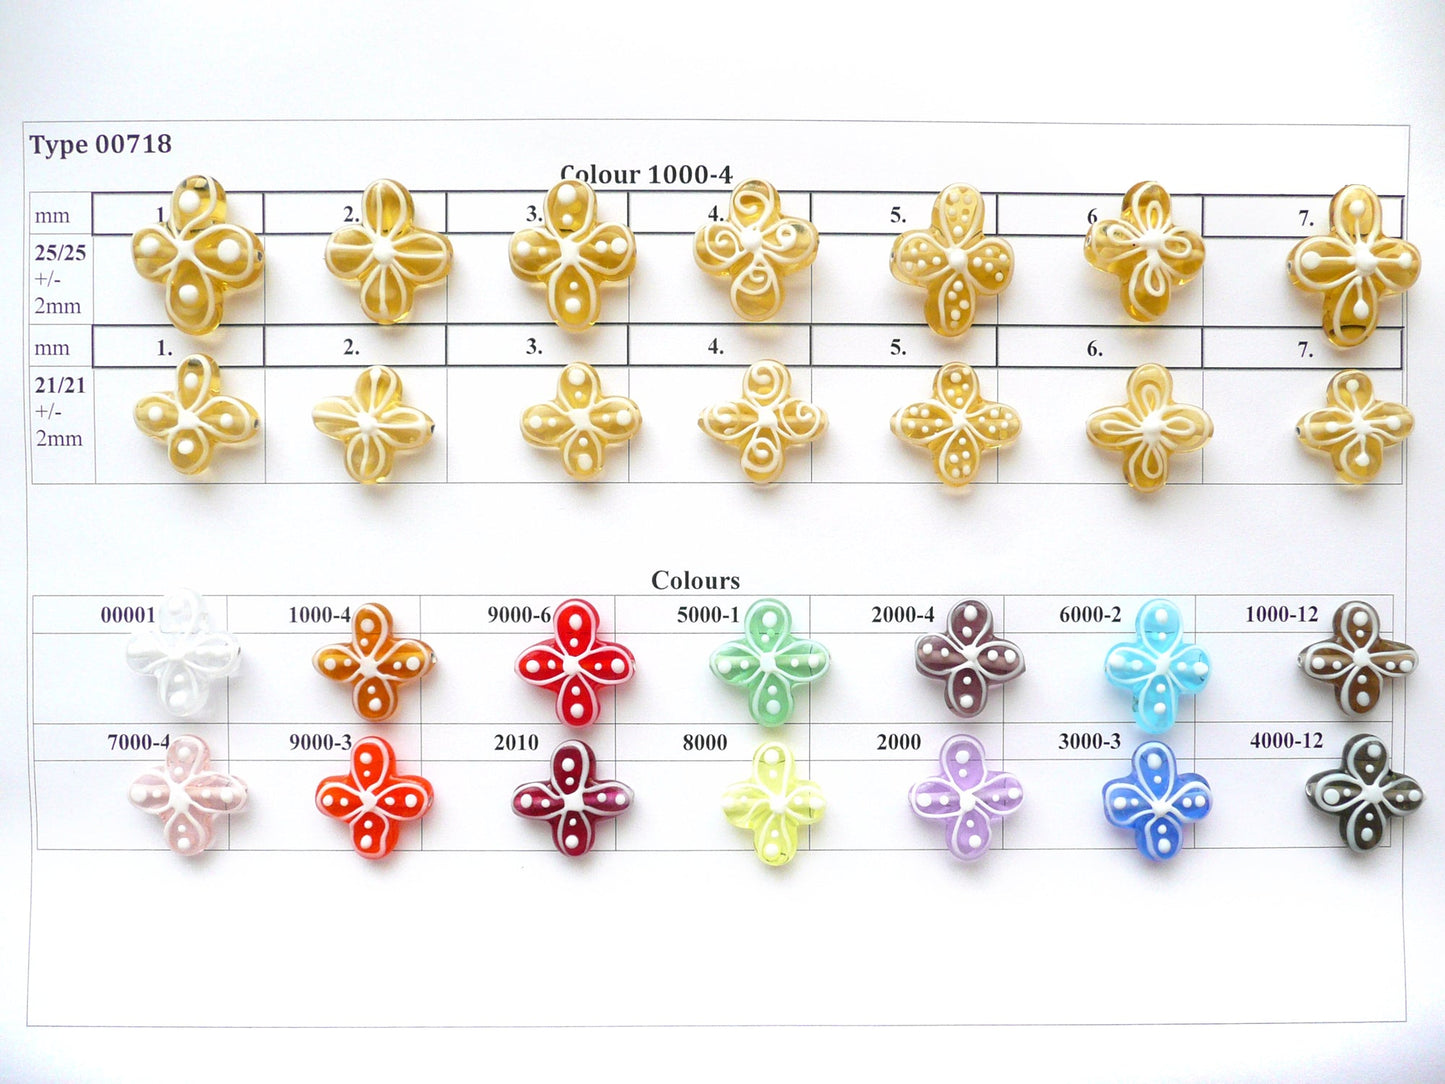 30 pcs Flower Lampwork Beads 718 / Design 5, Handmade, Preciosa Glass, Czech Republic